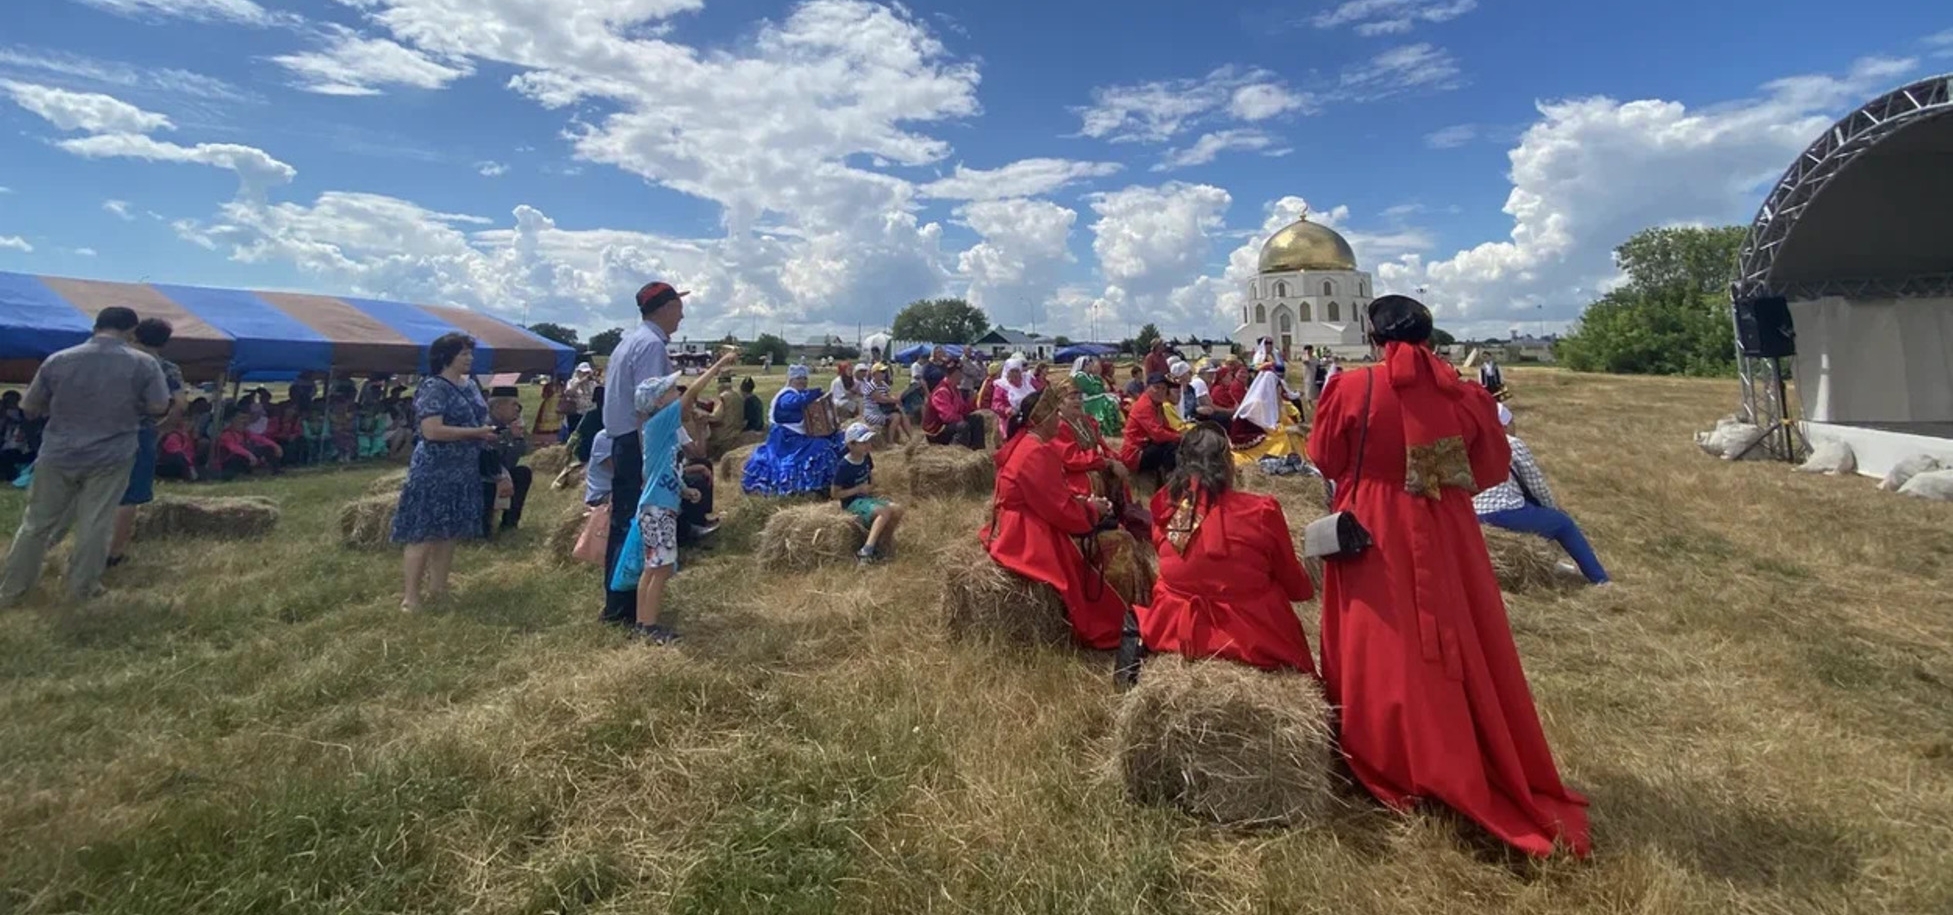 22-23 июля в Болгарах пройдет II Международный этнокультурный фестиваль «Ага-Базар»